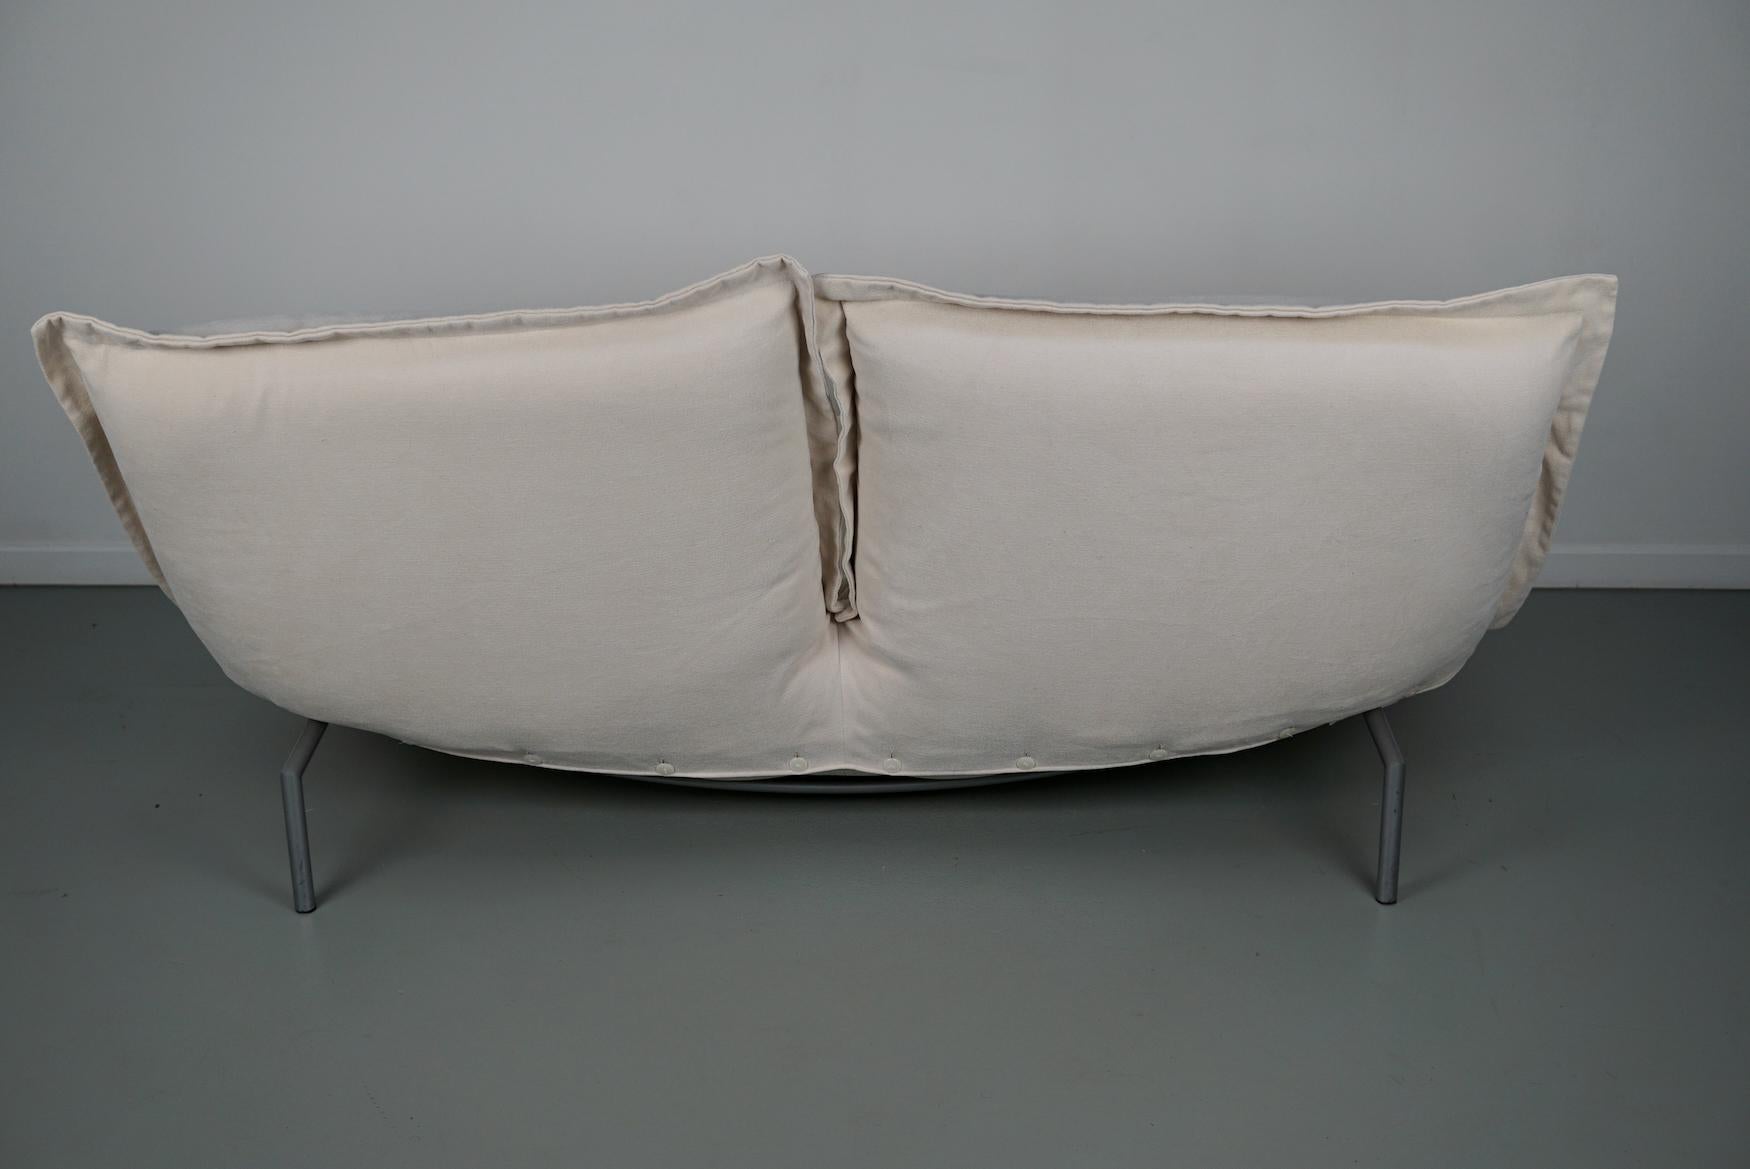 Calin Corner Sofa Set by Pascal Mourgue for Cinna / Ligne Roset - 4 seater 8